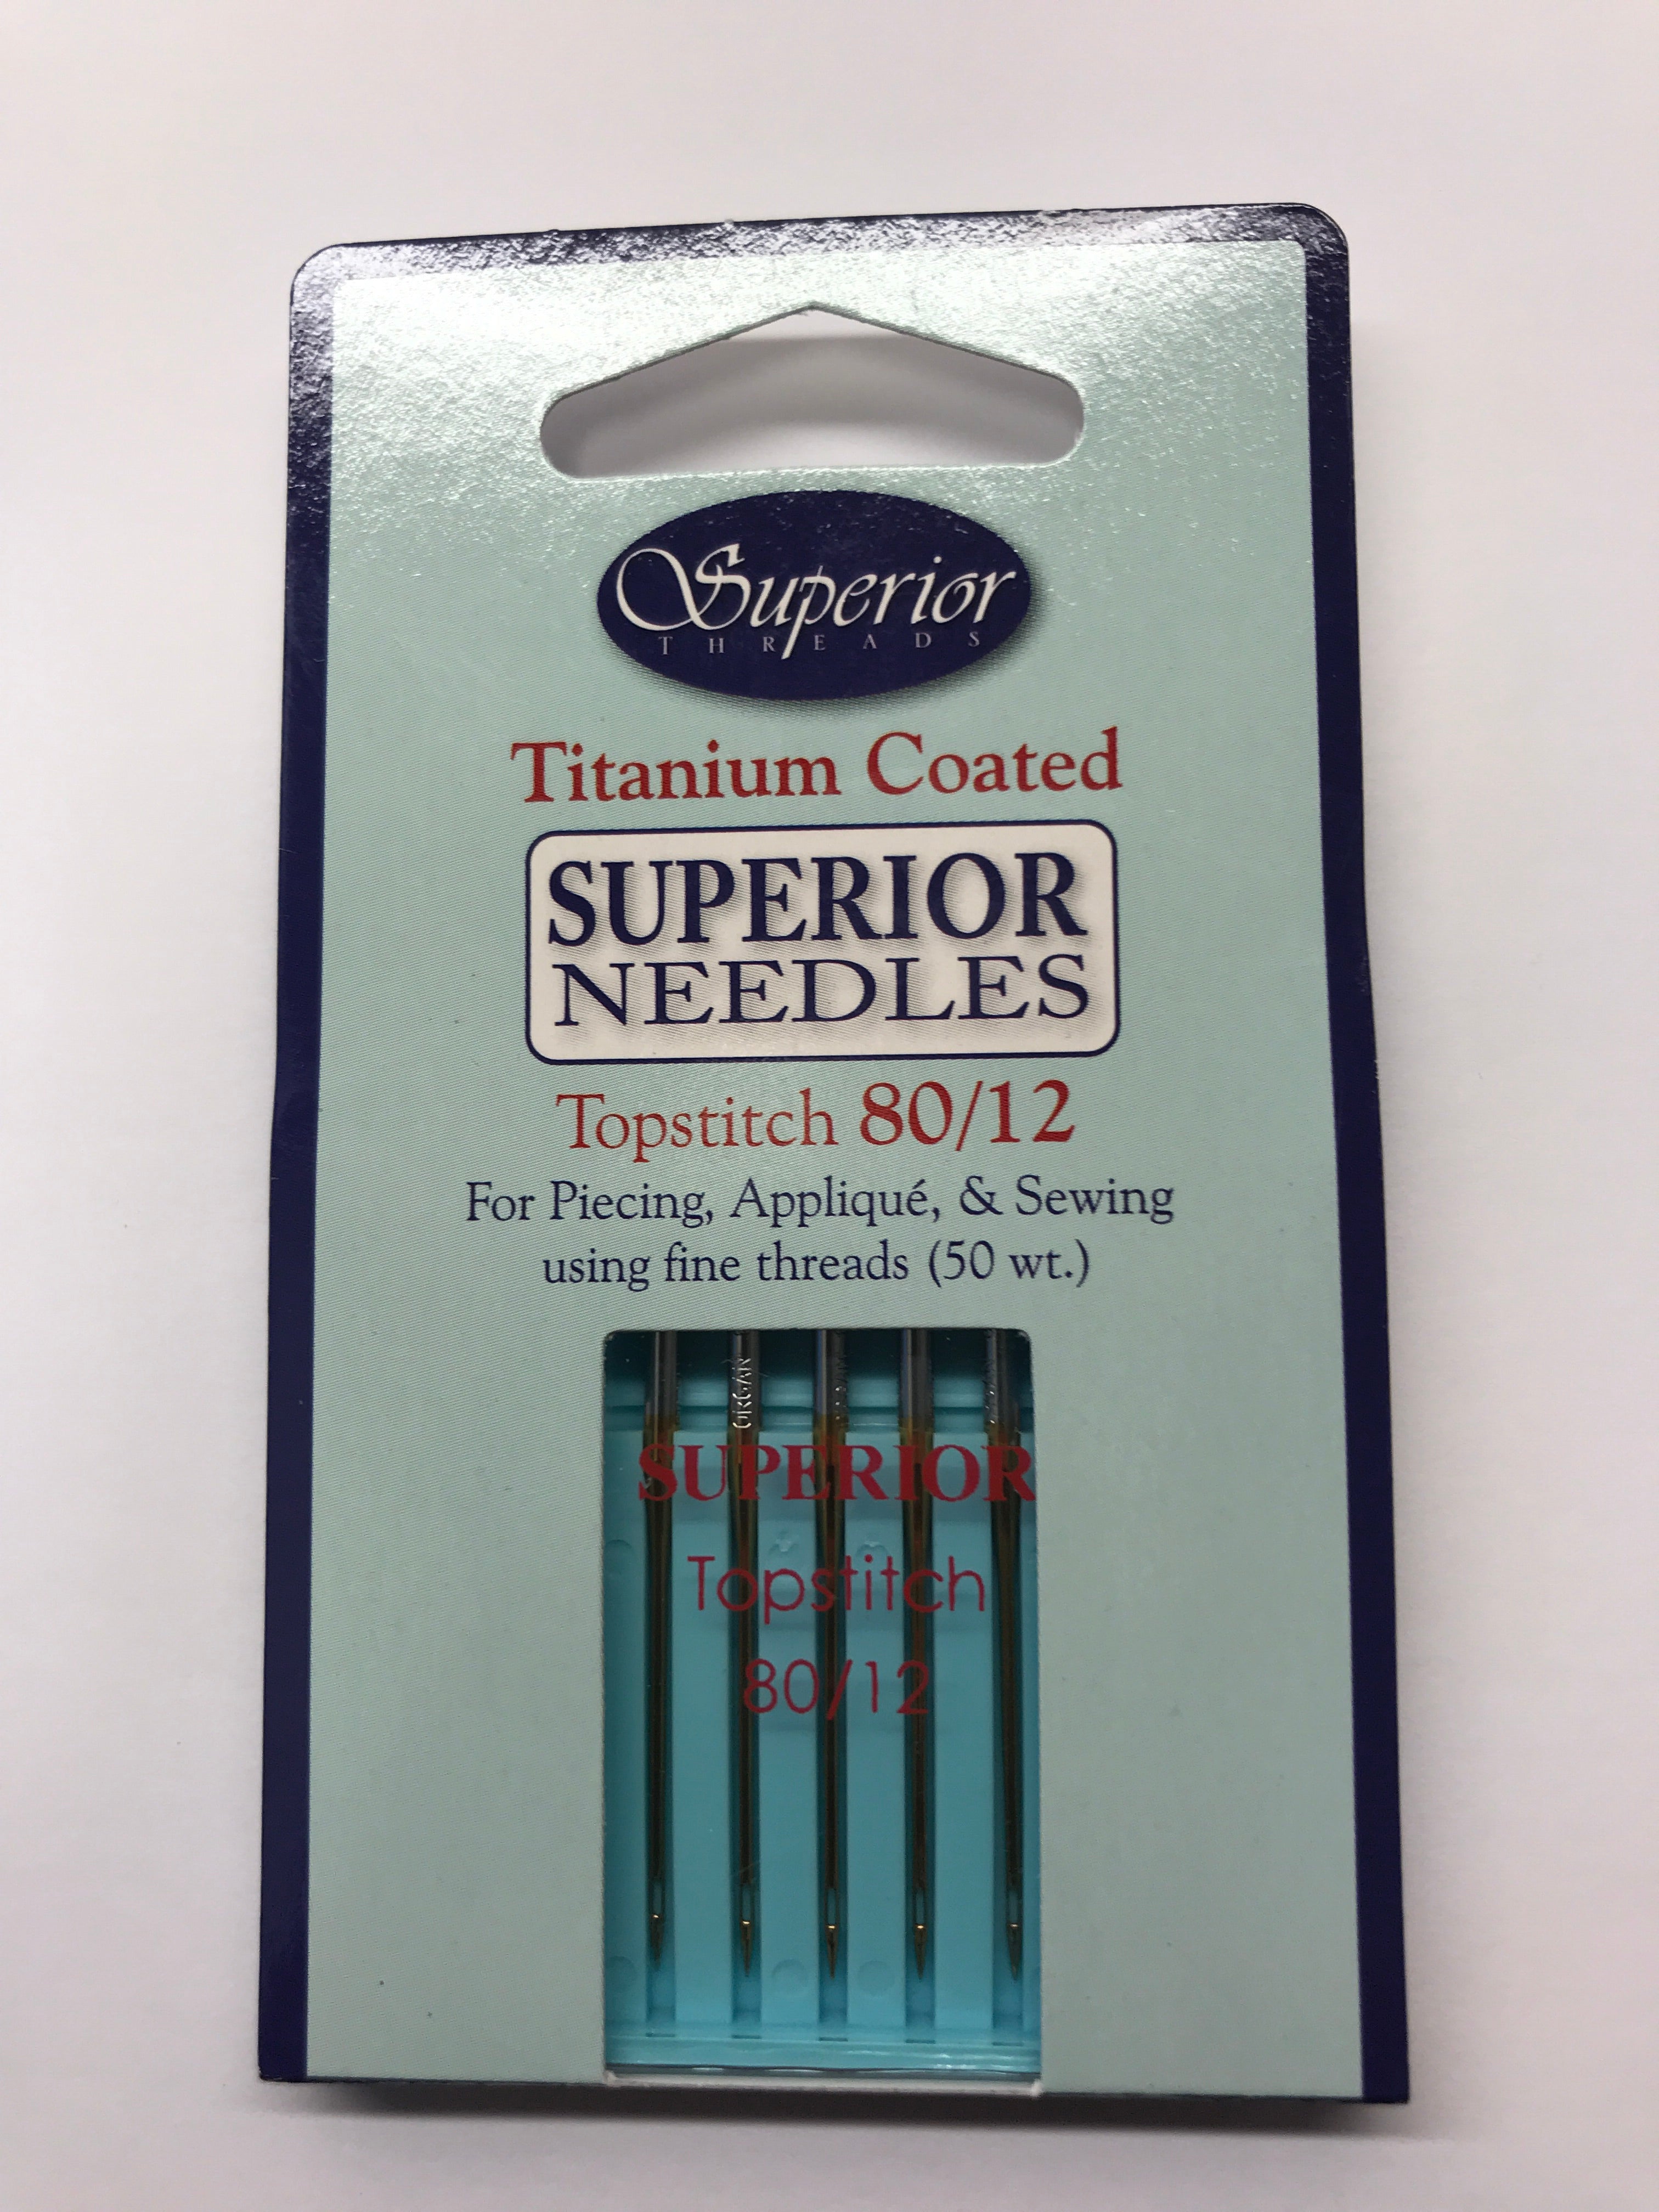 Superior Titanium Coated Topstitch Machine Needles - 80/12 - (5 pack)